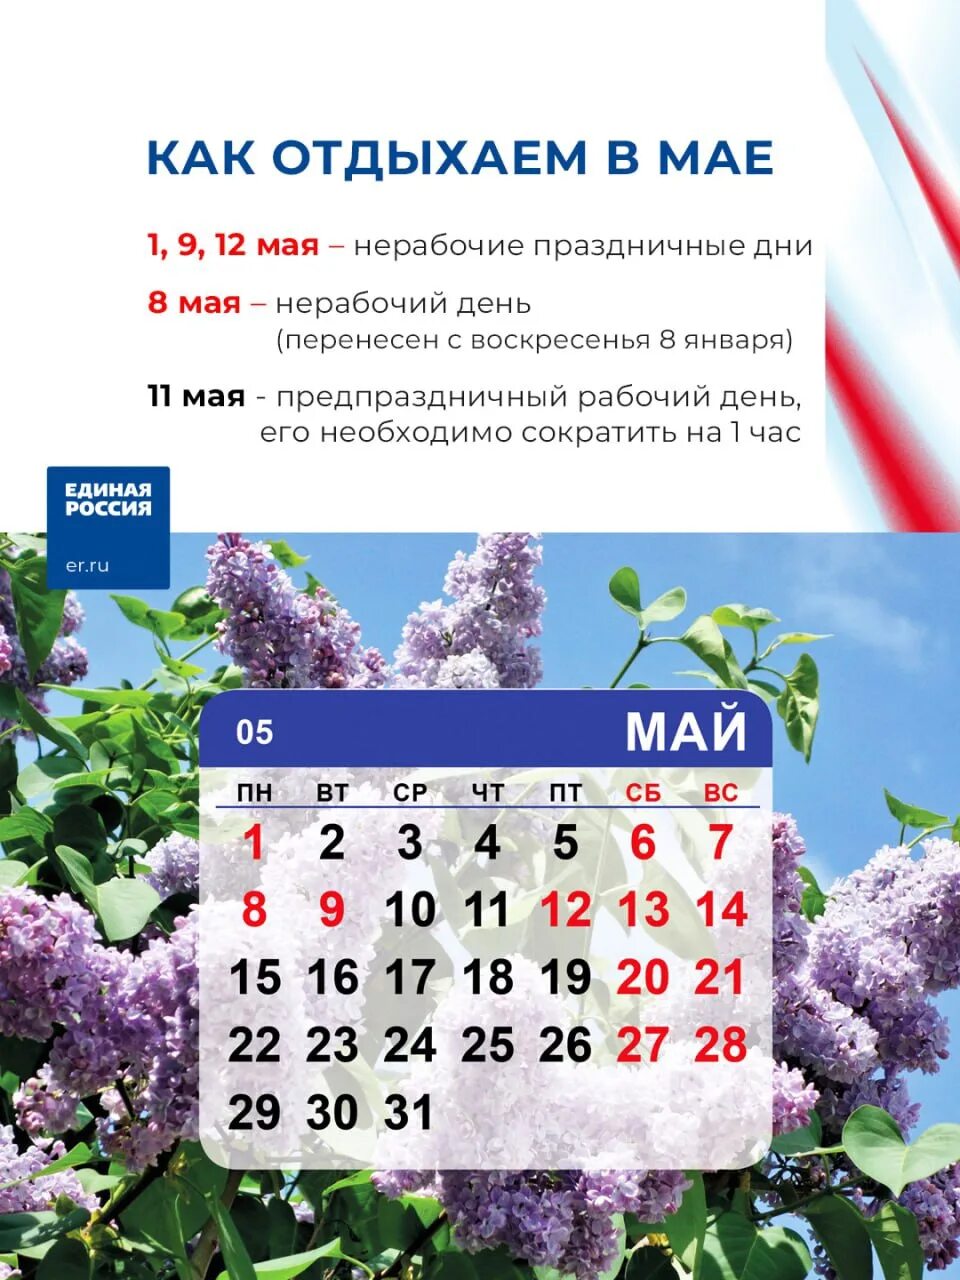 Как казахстан отдыхает на майские праздники. Праздники в мае. Выходные на майские праздники. Праздники в мае календарь. Рабочие и праздничные дни майские.